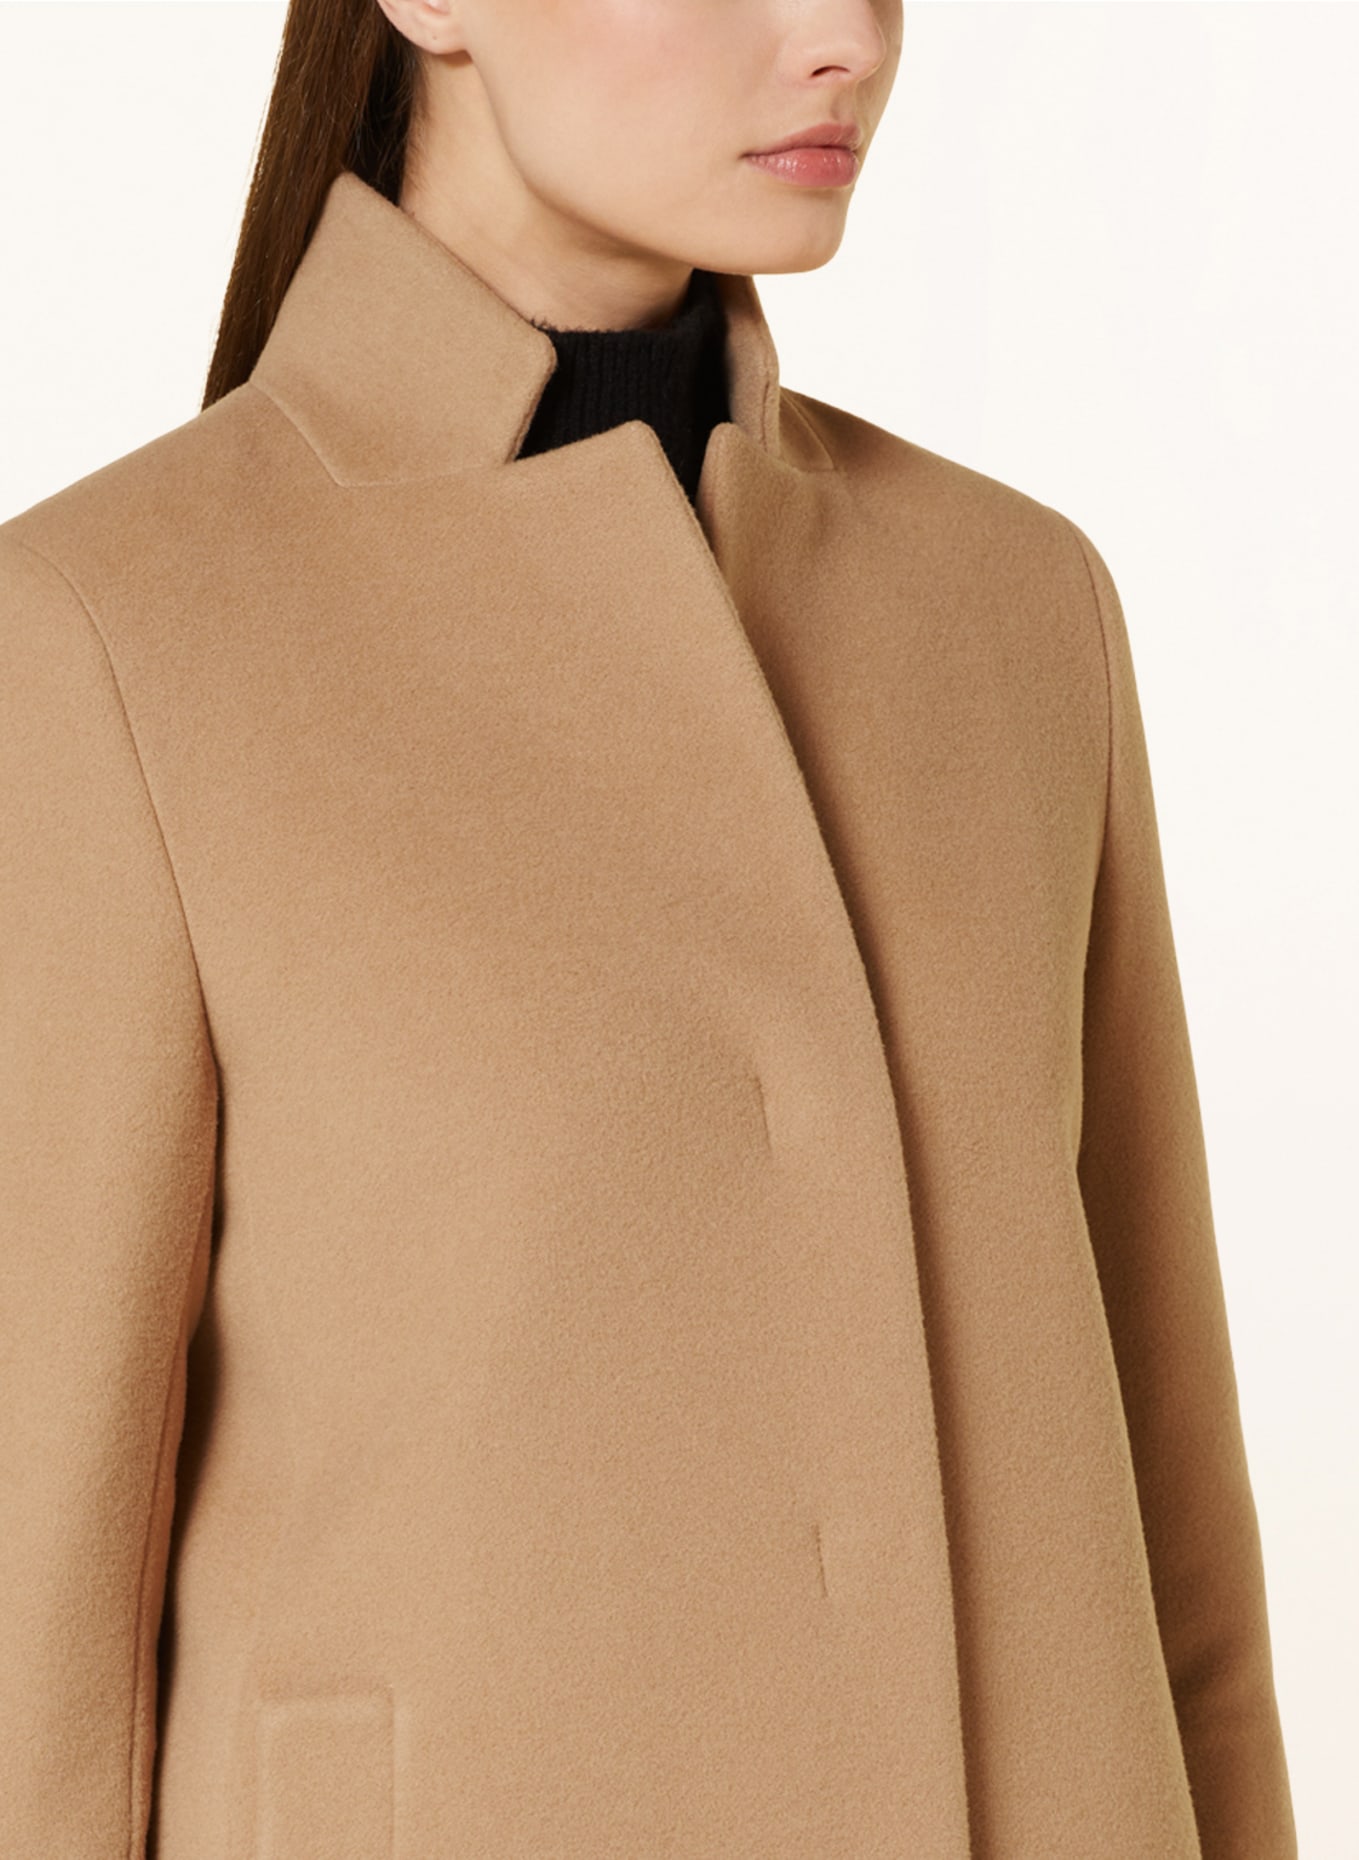 ICONS CINZIA ROCCA Wool coat, Color: CAMEL (Image 4)